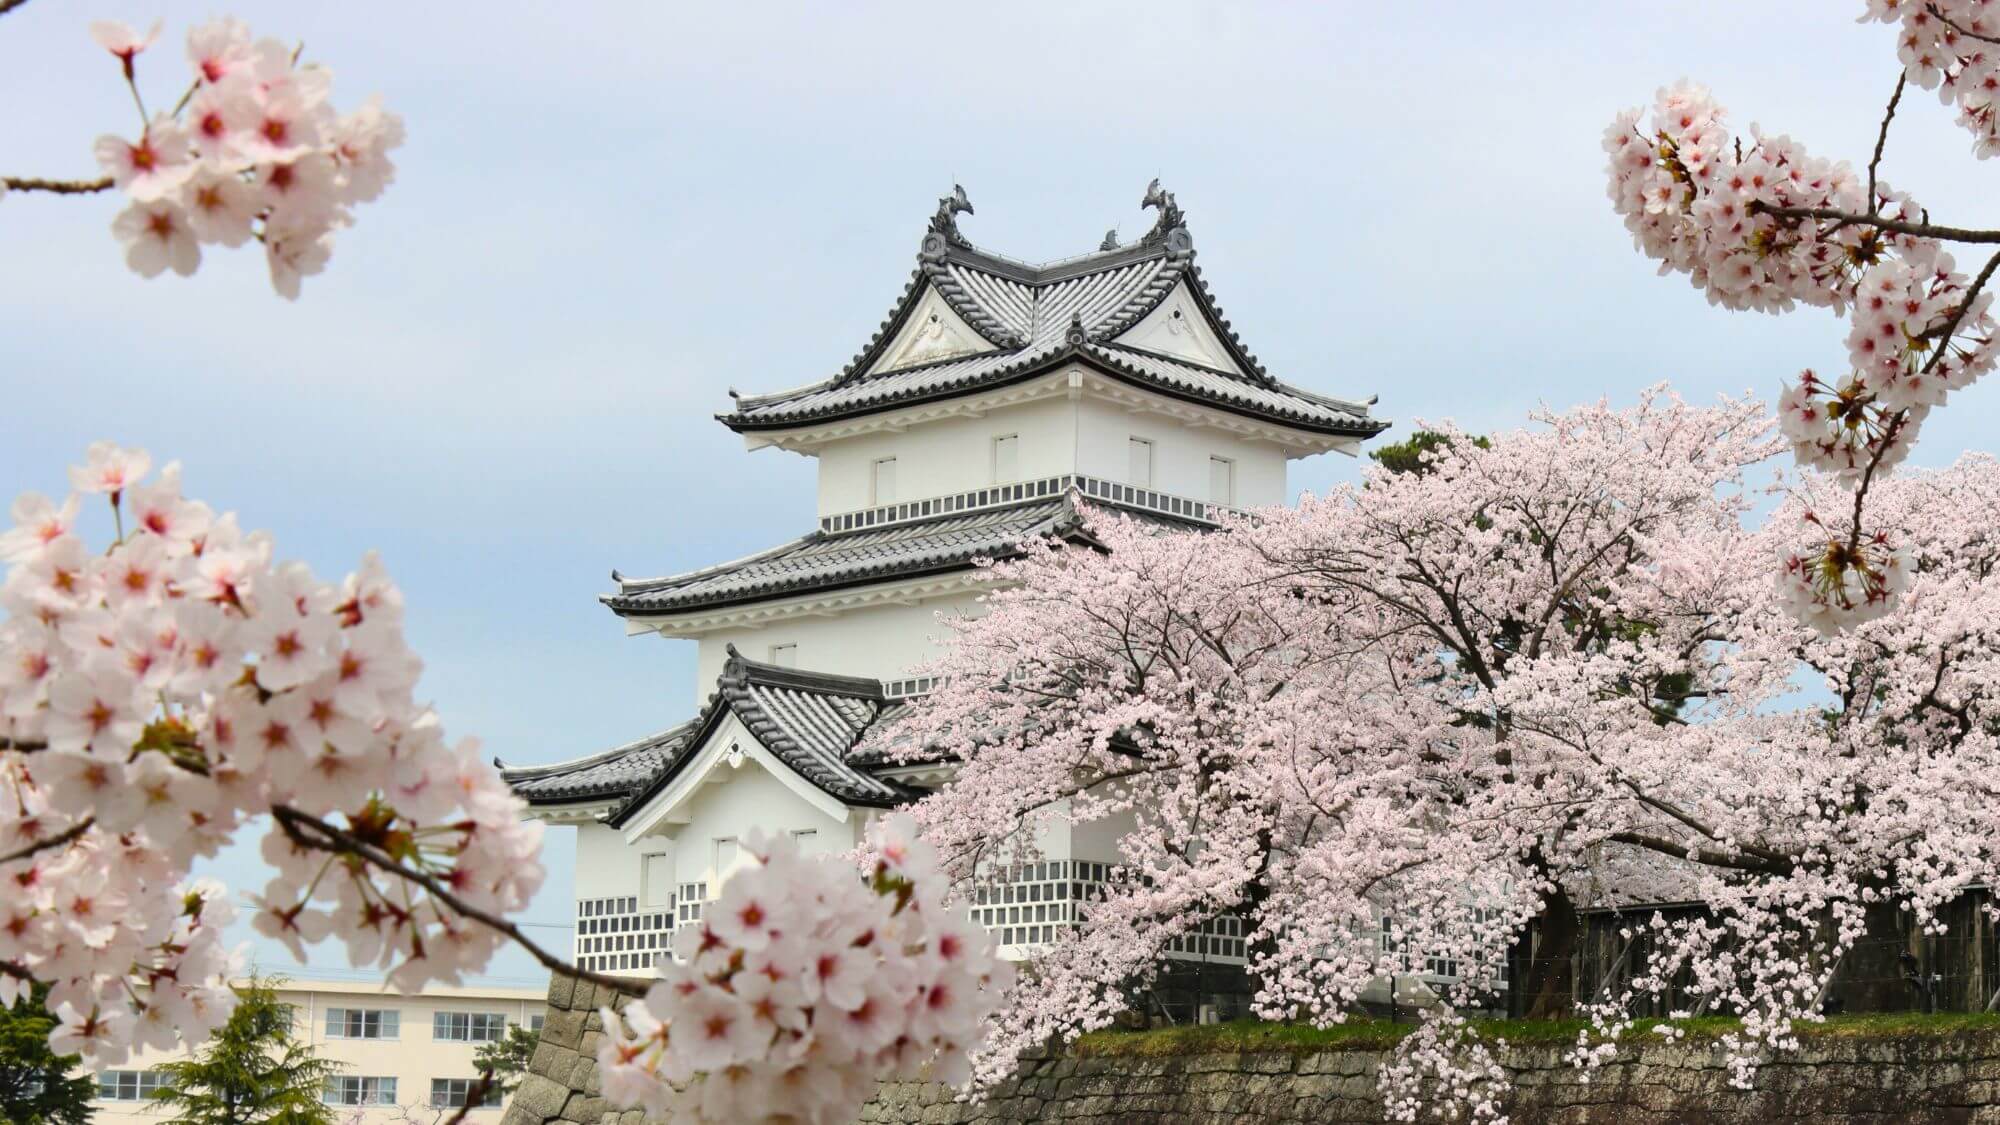 【新発田城】お車で20分。日本100名城の一つであり、春には桜の名所としても人気です。